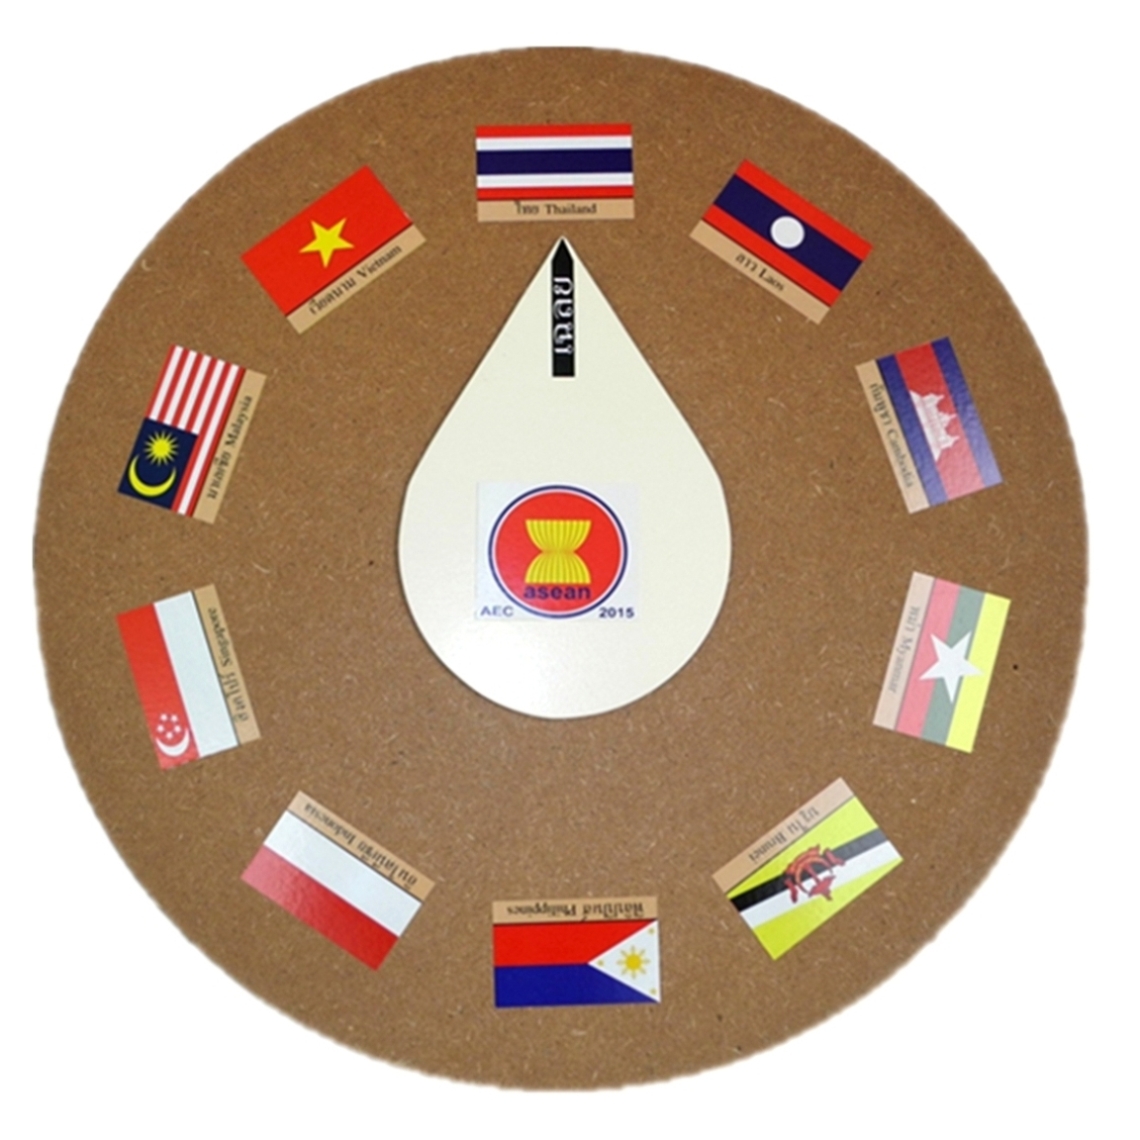 กระดานหมุนธงชาติ AEC 10 ชาติ